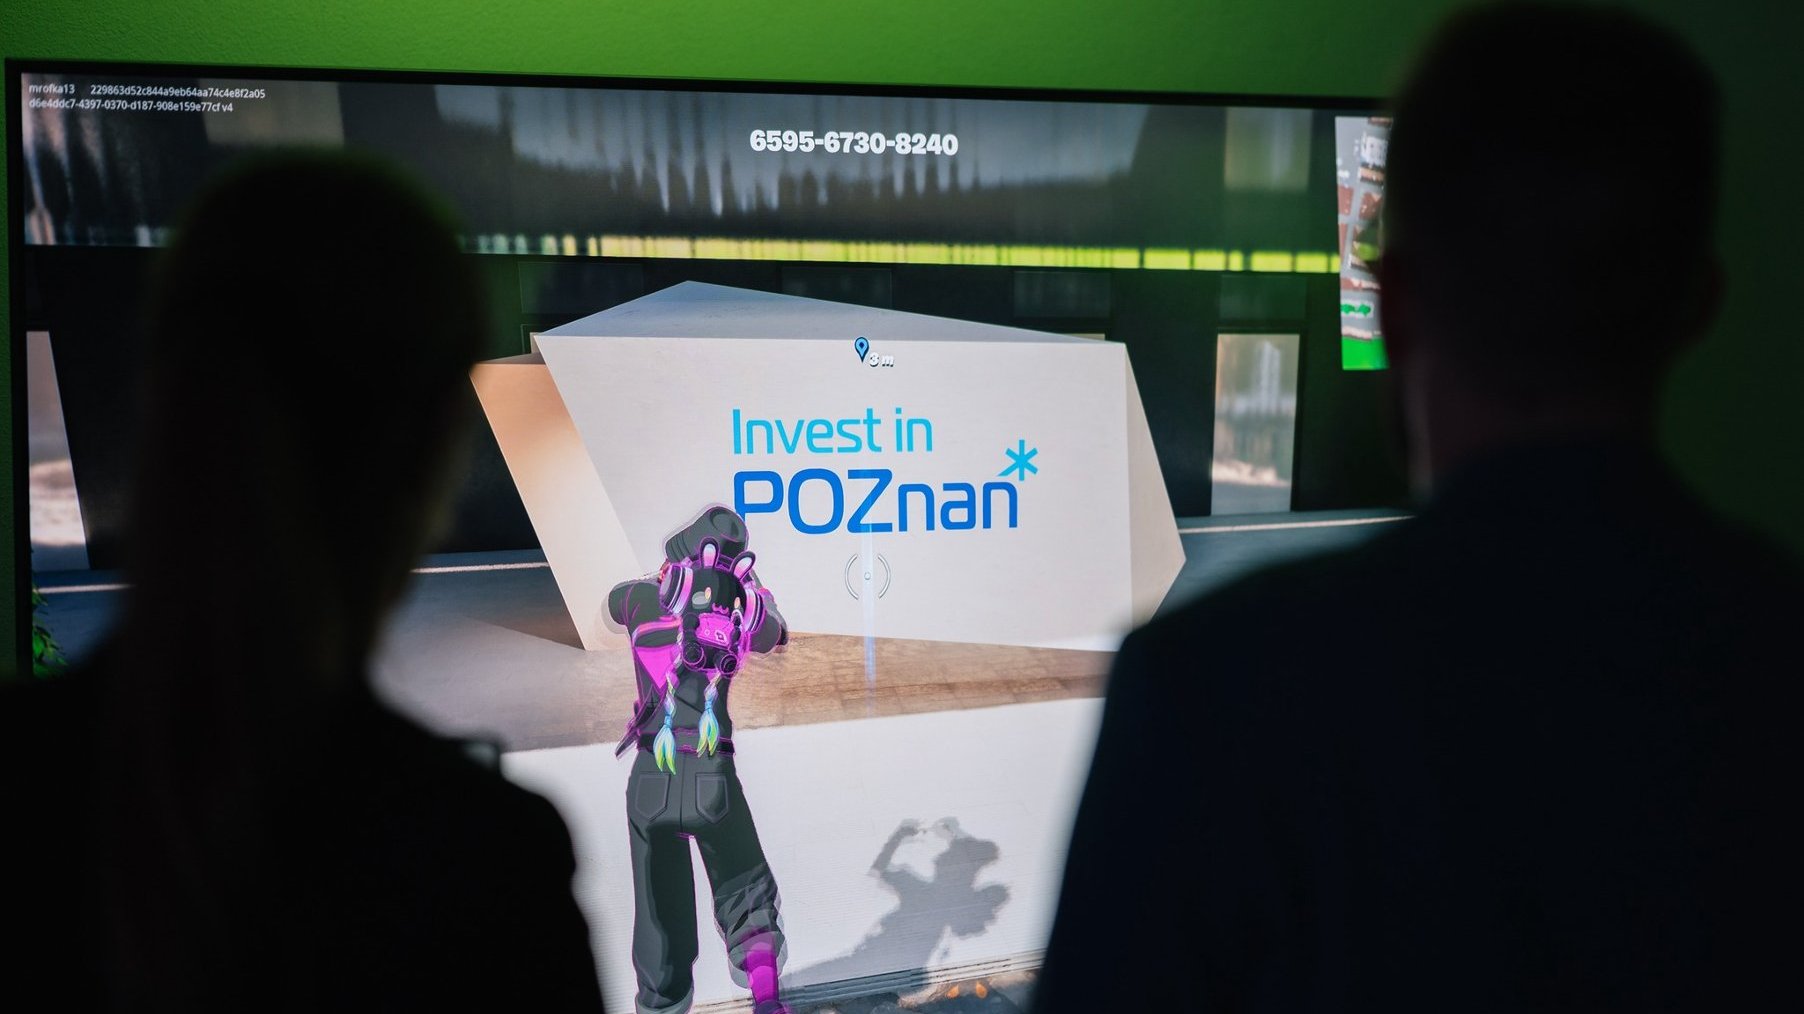 Zdjęcie przedstawia dwie osoby stojące plecami do kamery. Obydwie zwrócone są w kierunku ekranu, na którym włączona jest gra Fortnite. Postać w grze patrzy na monument z logotypem Invest in Poznań.